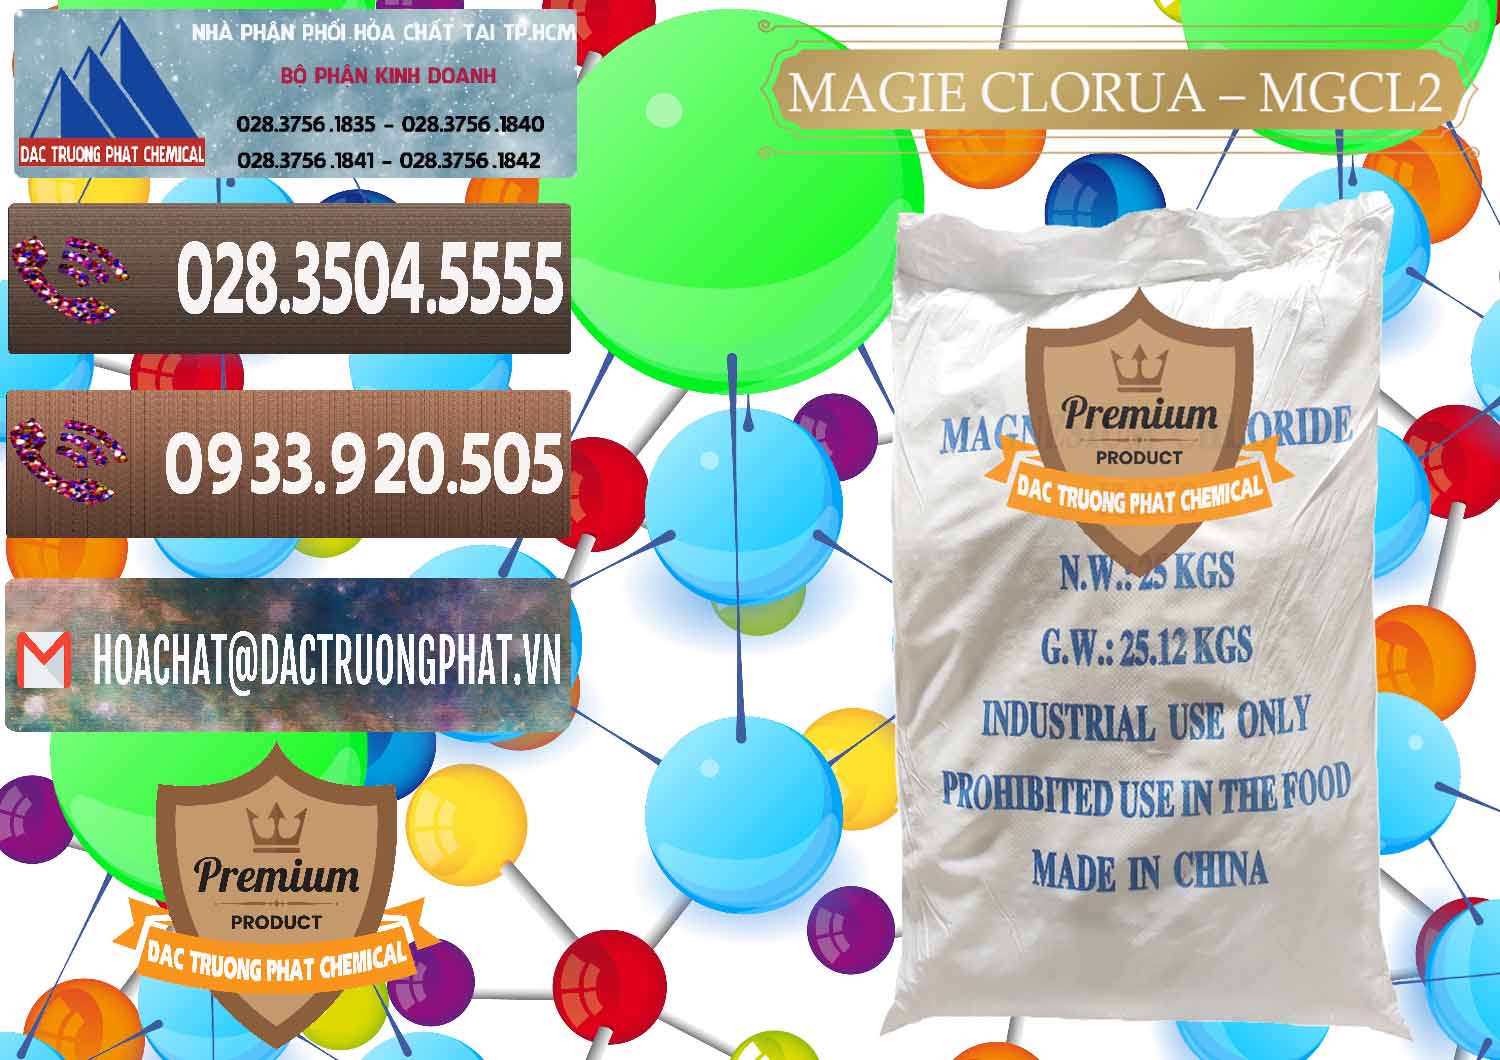 Nơi chuyên cung cấp _ bán Magie Clorua – MGCL2 96% Dạng Vảy Trung Quốc China - 0091 - Cty chuyên cung cấp - bán hóa chất tại TP.HCM - hoachatviet.net